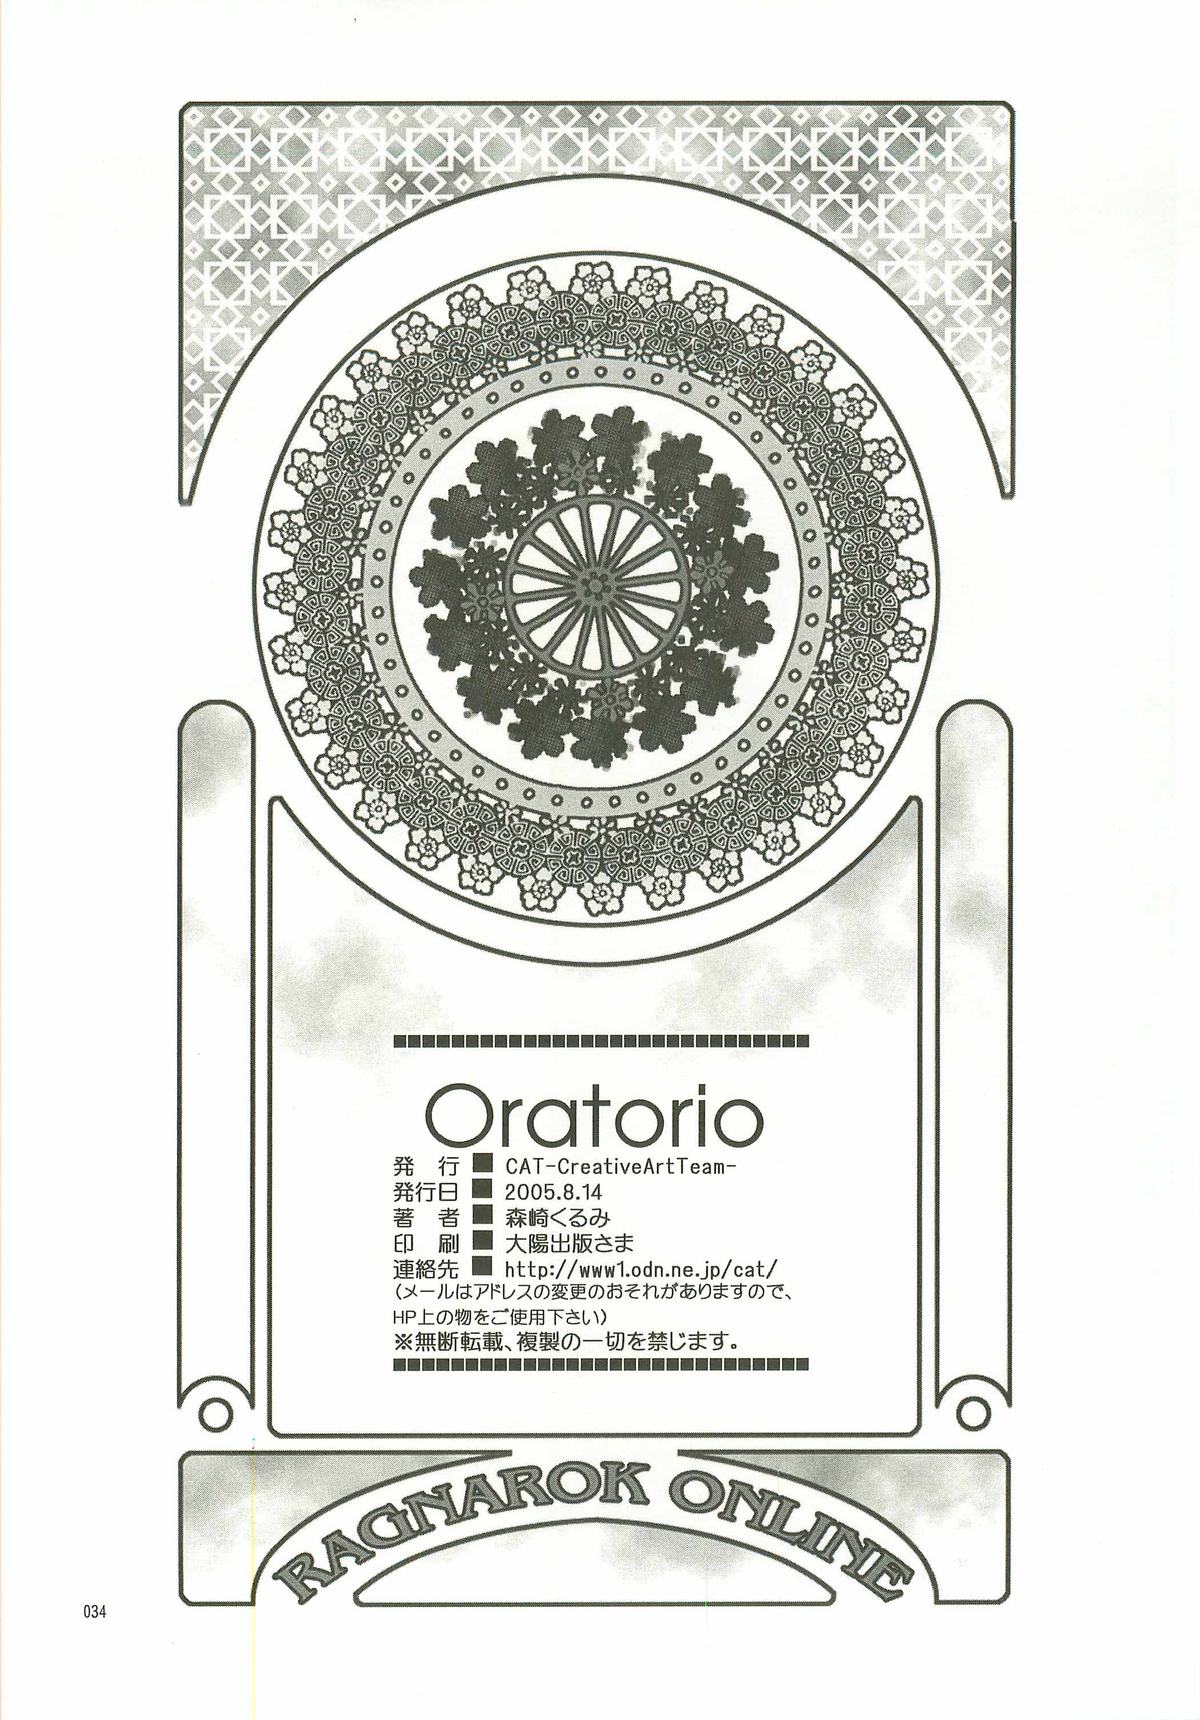 (C68) [C.A.T (Morisaki Kurumi)] Oratorio (Ragnarok Online) (C68) (同人誌) [C.A.T (森崎くるみ)] Oratorio (ラグナロクオンライン)